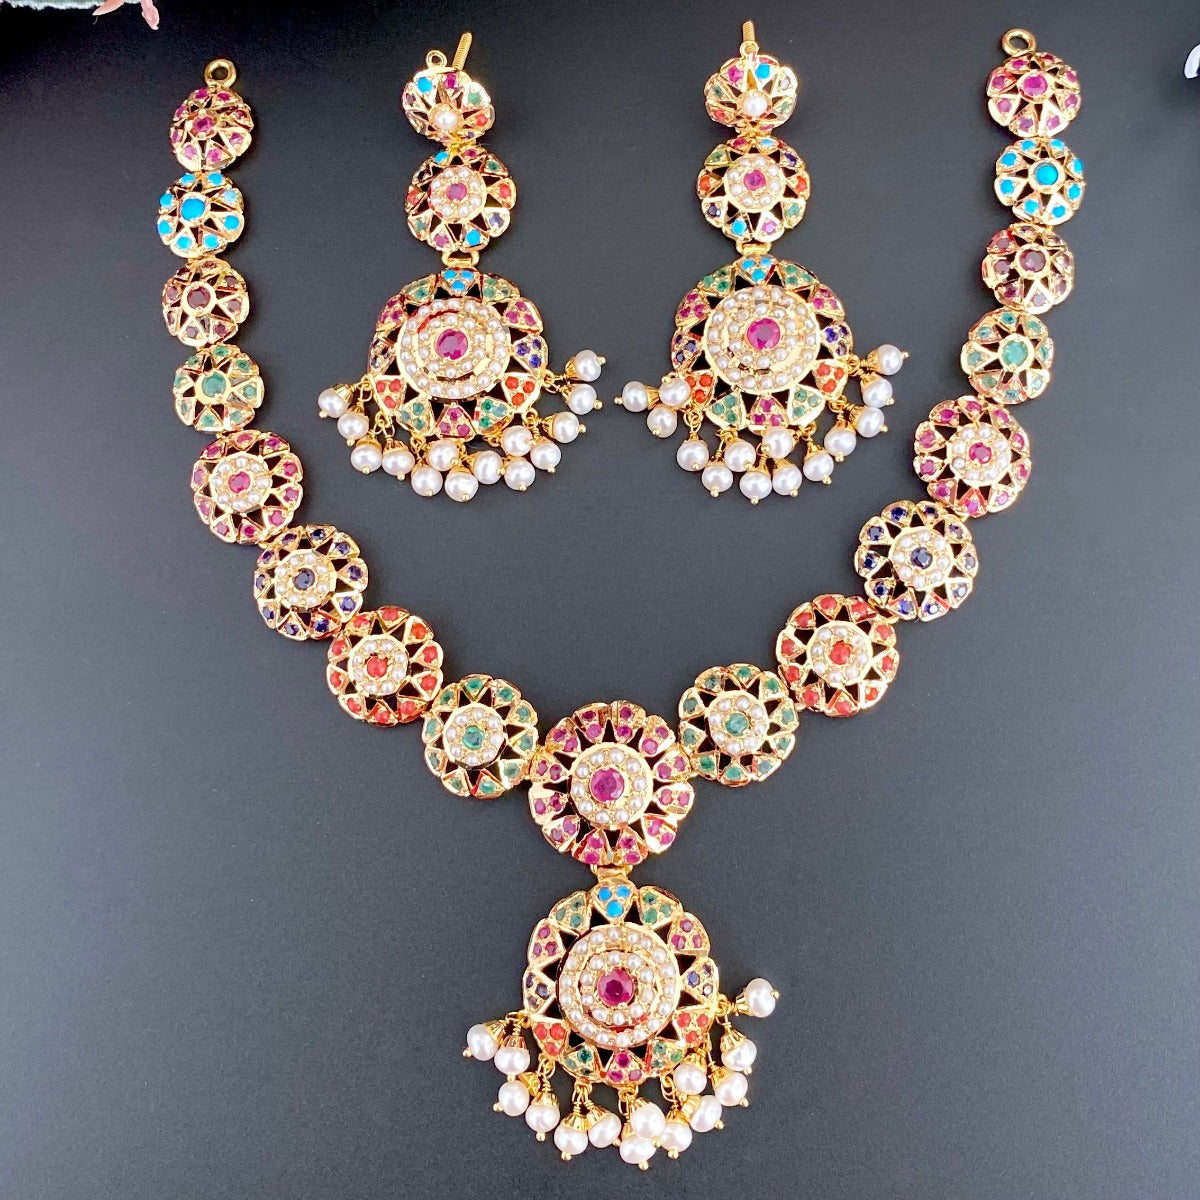 amritsari jewelry in navratna colors in 14k